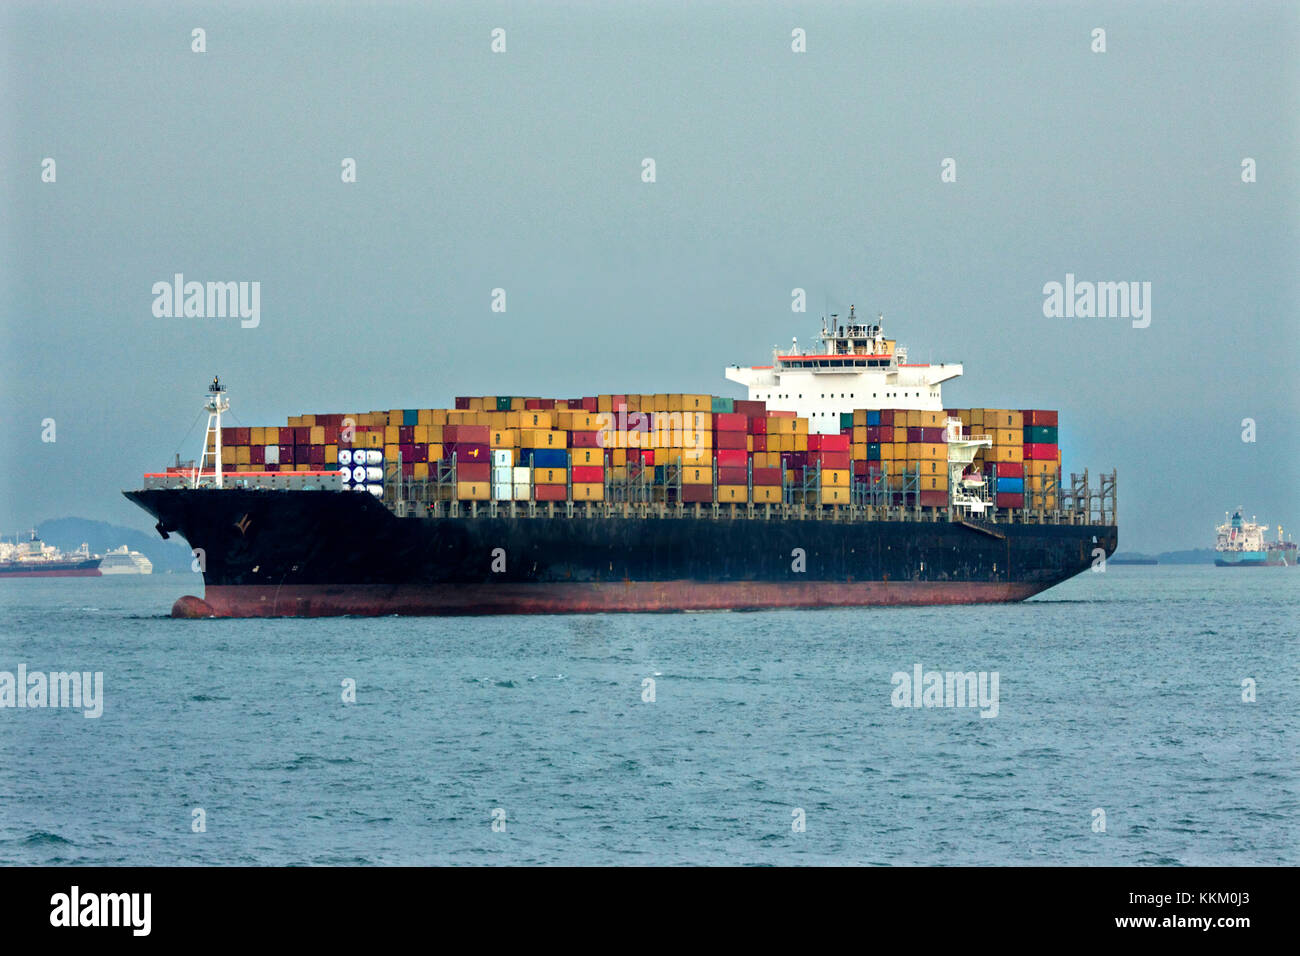 Voll Container schiff Hafen nähert, Bunkern geladen wird, wird der Ladevorgang entladen Cargo, Handelsschiff, Seeverkehr, Schifffahrt, maritime Fotos, pradeep Subramanian Stockfoto